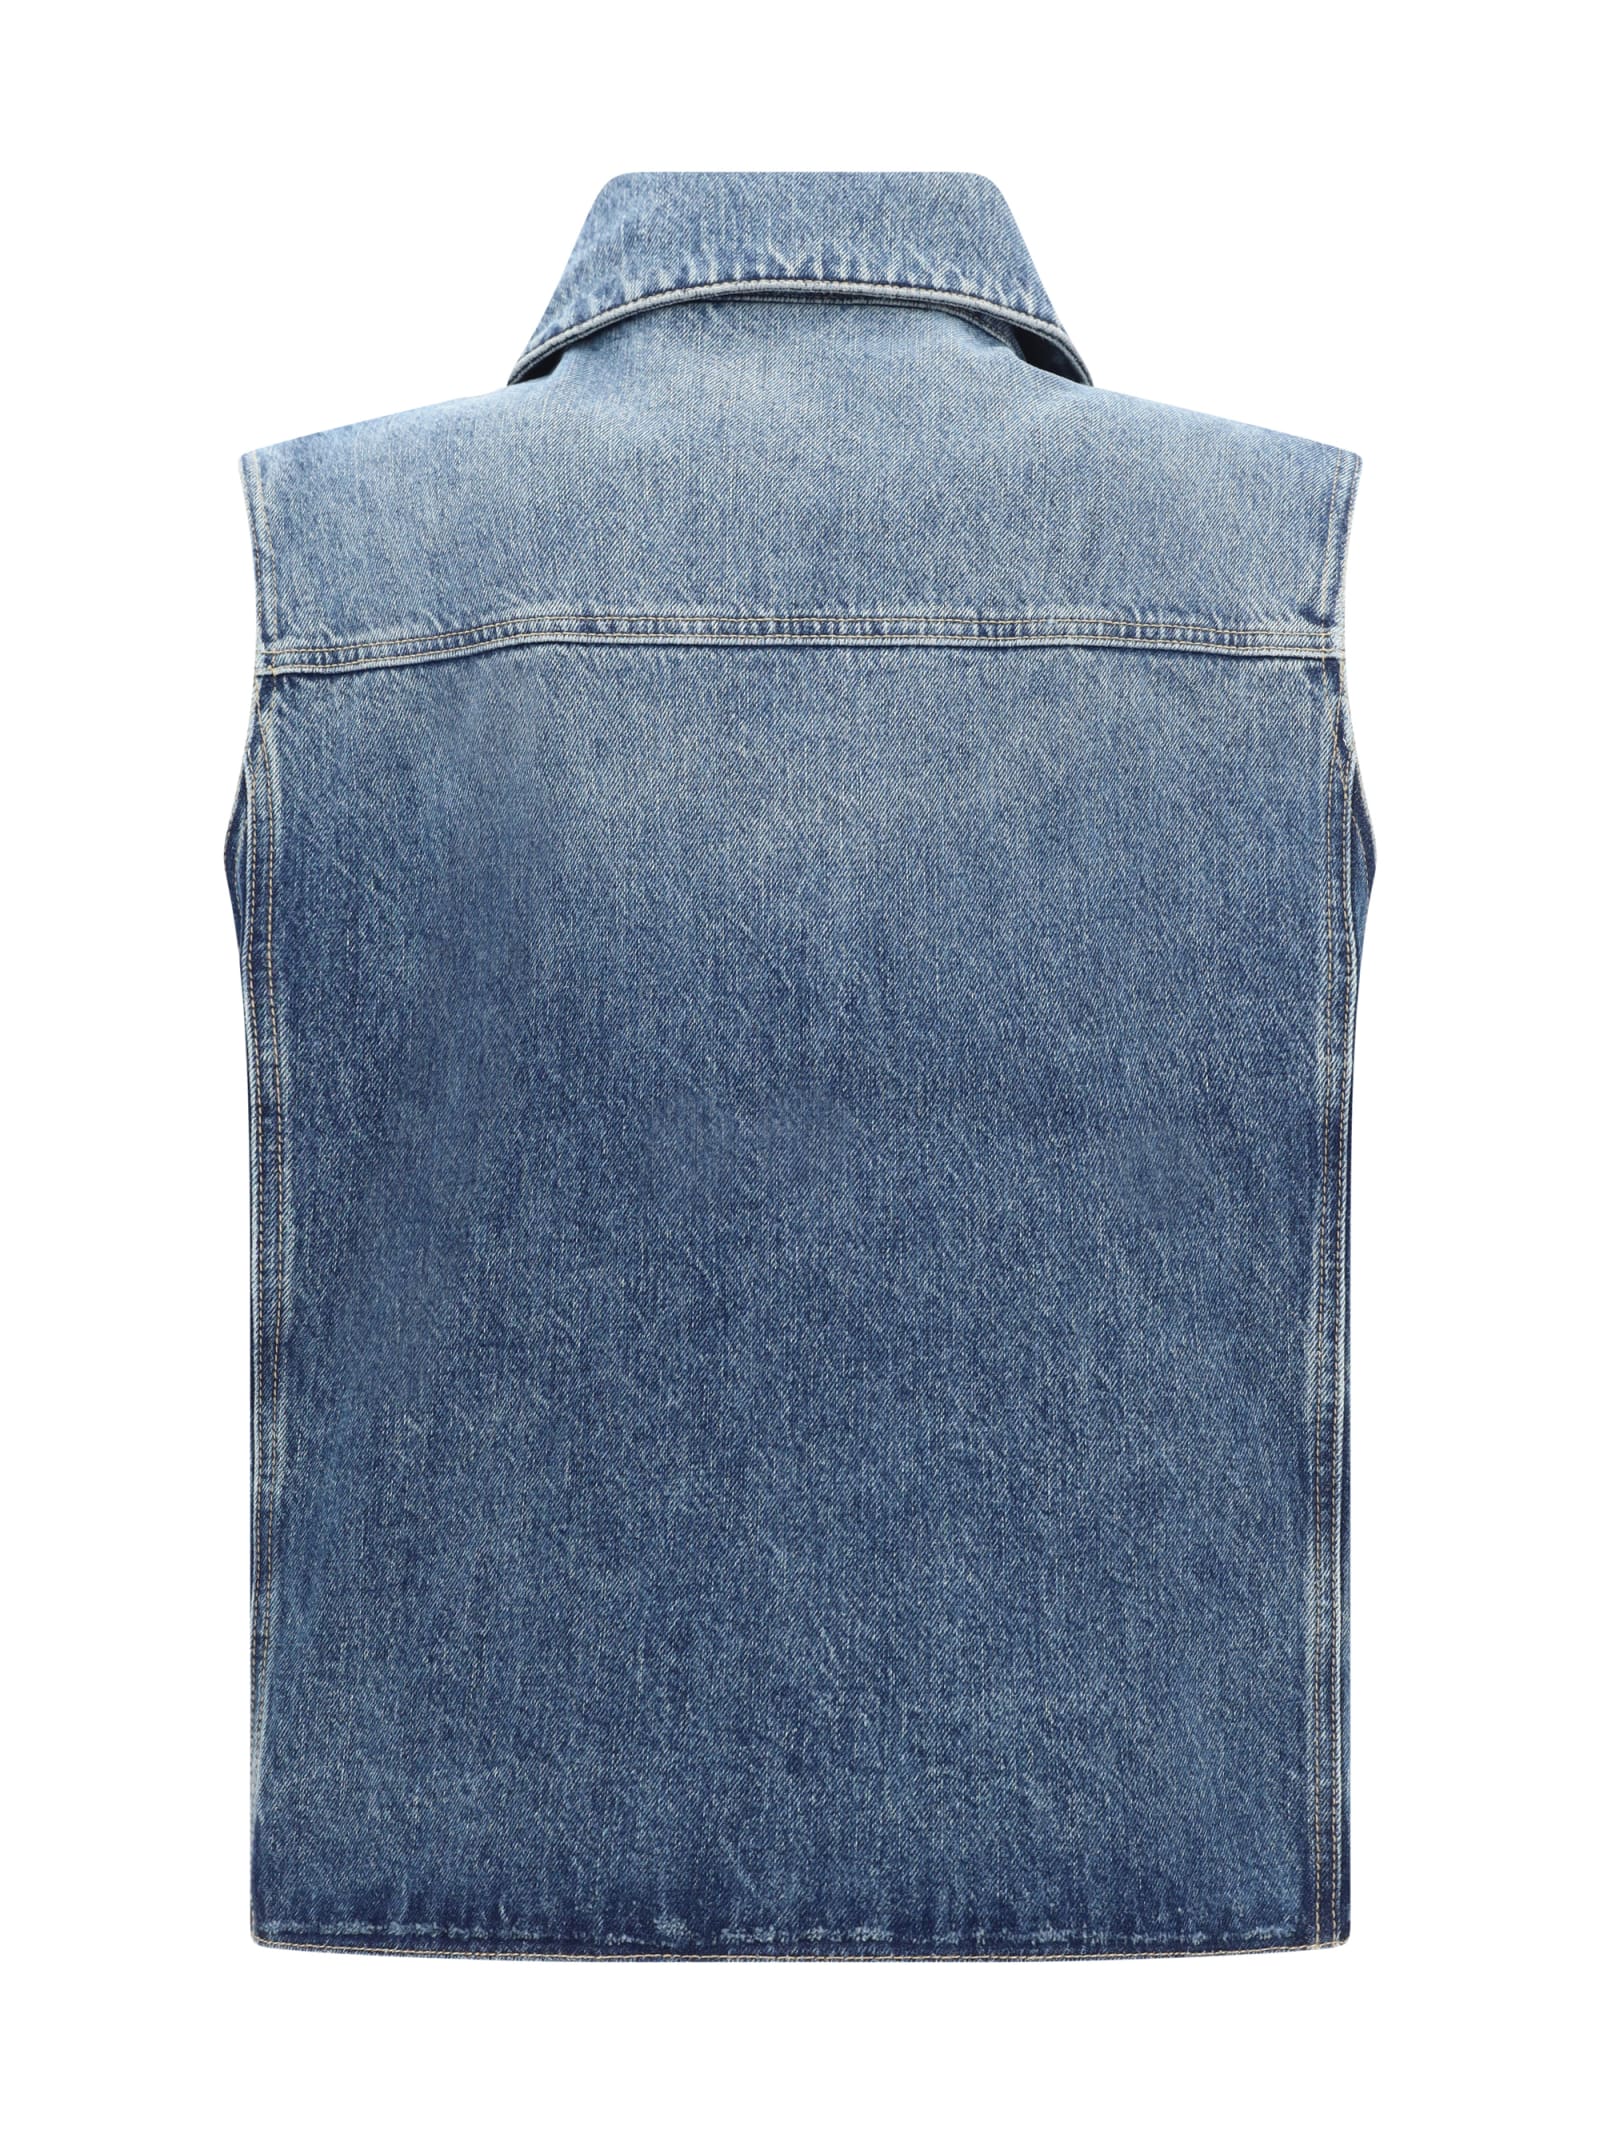 Shop Givenchy Denim Vest In Indigo Blue